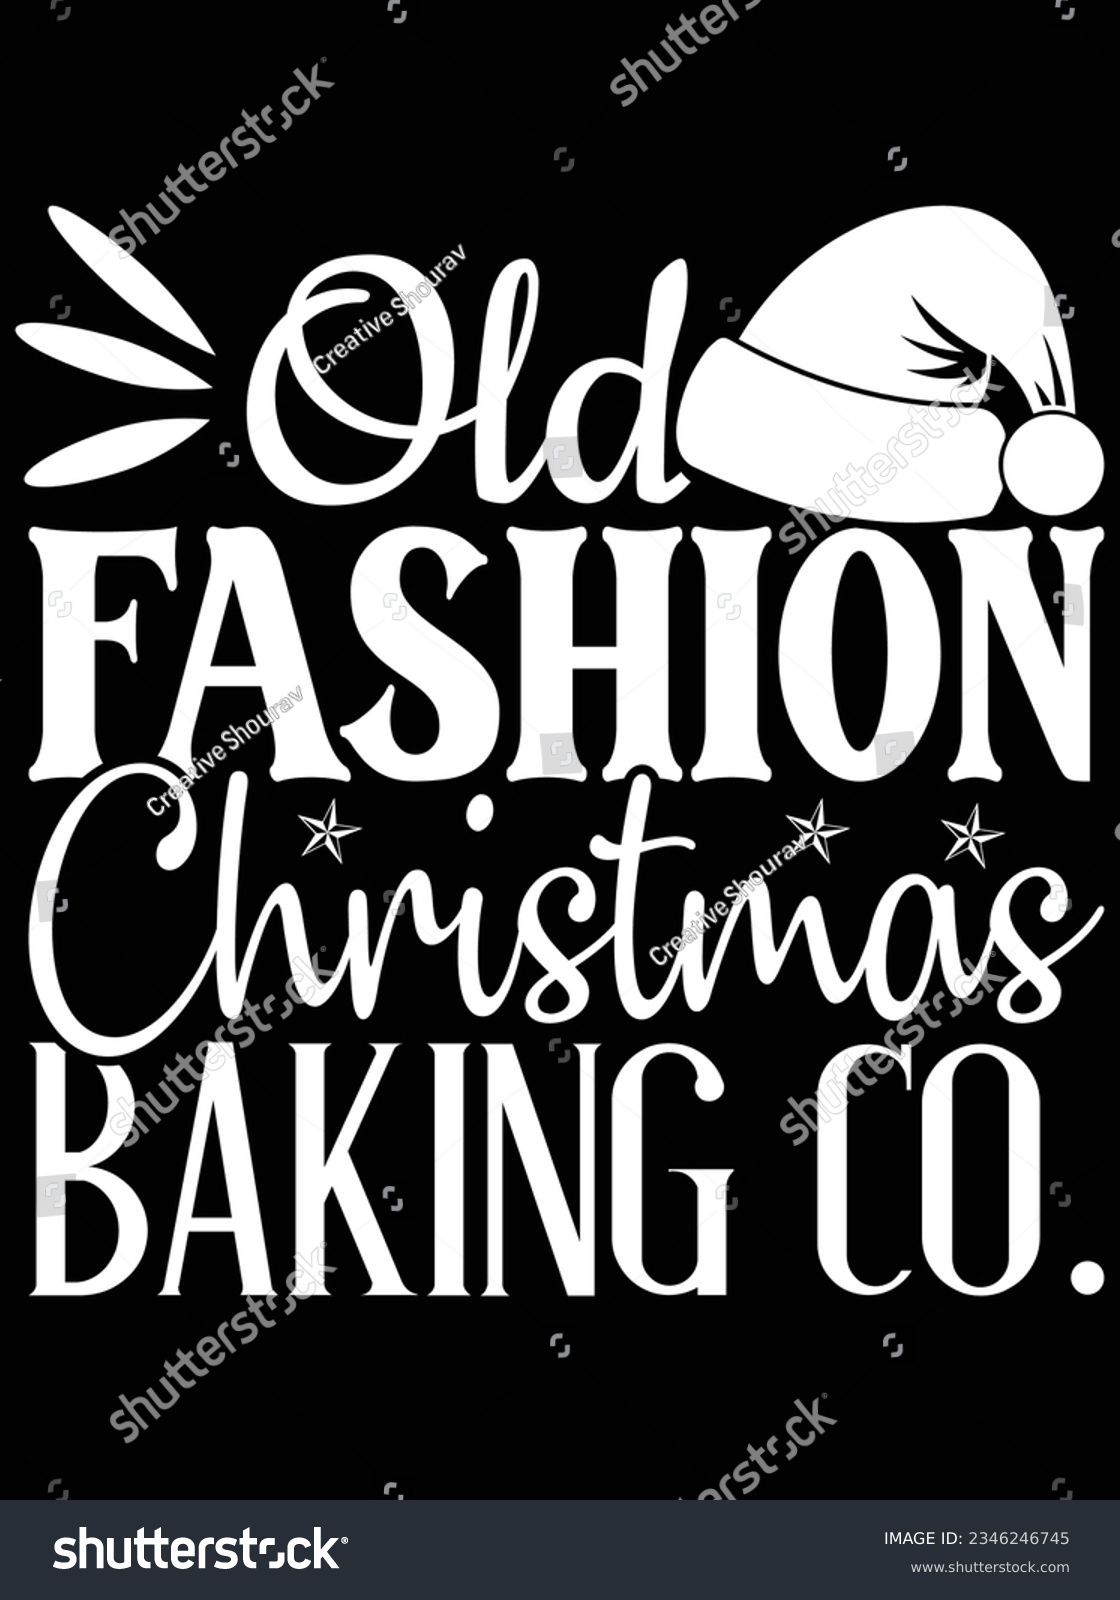 SVG of Old fashion Christmas baking co vector art design, eps file. design file for t-shirt. SVG, EPS cuttable design file svg